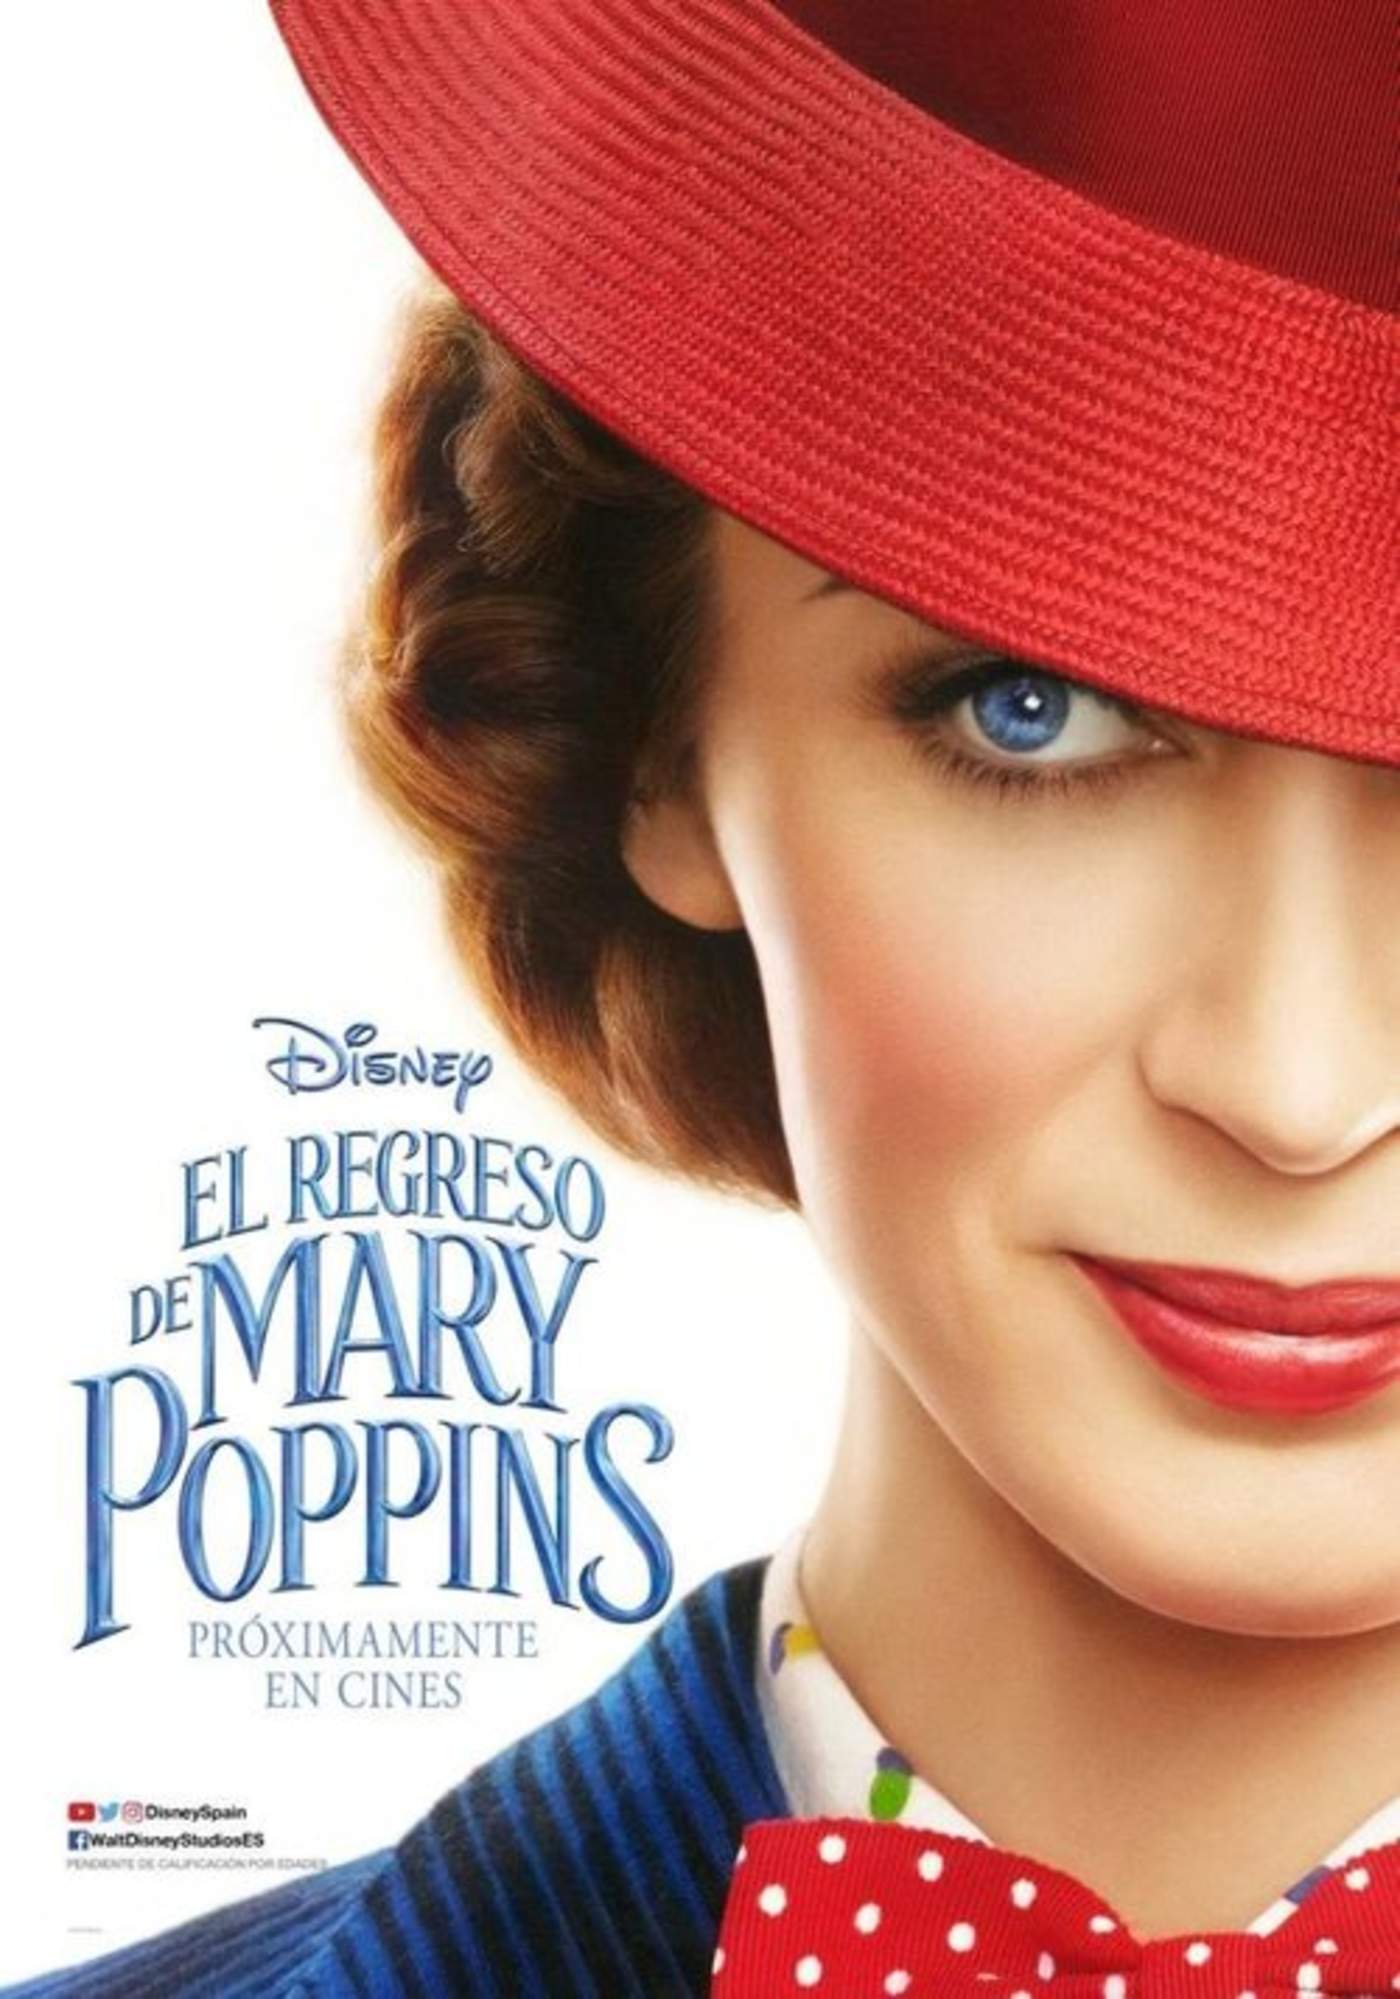 El Regreso de Mary Poppins. (ESPECIAL)